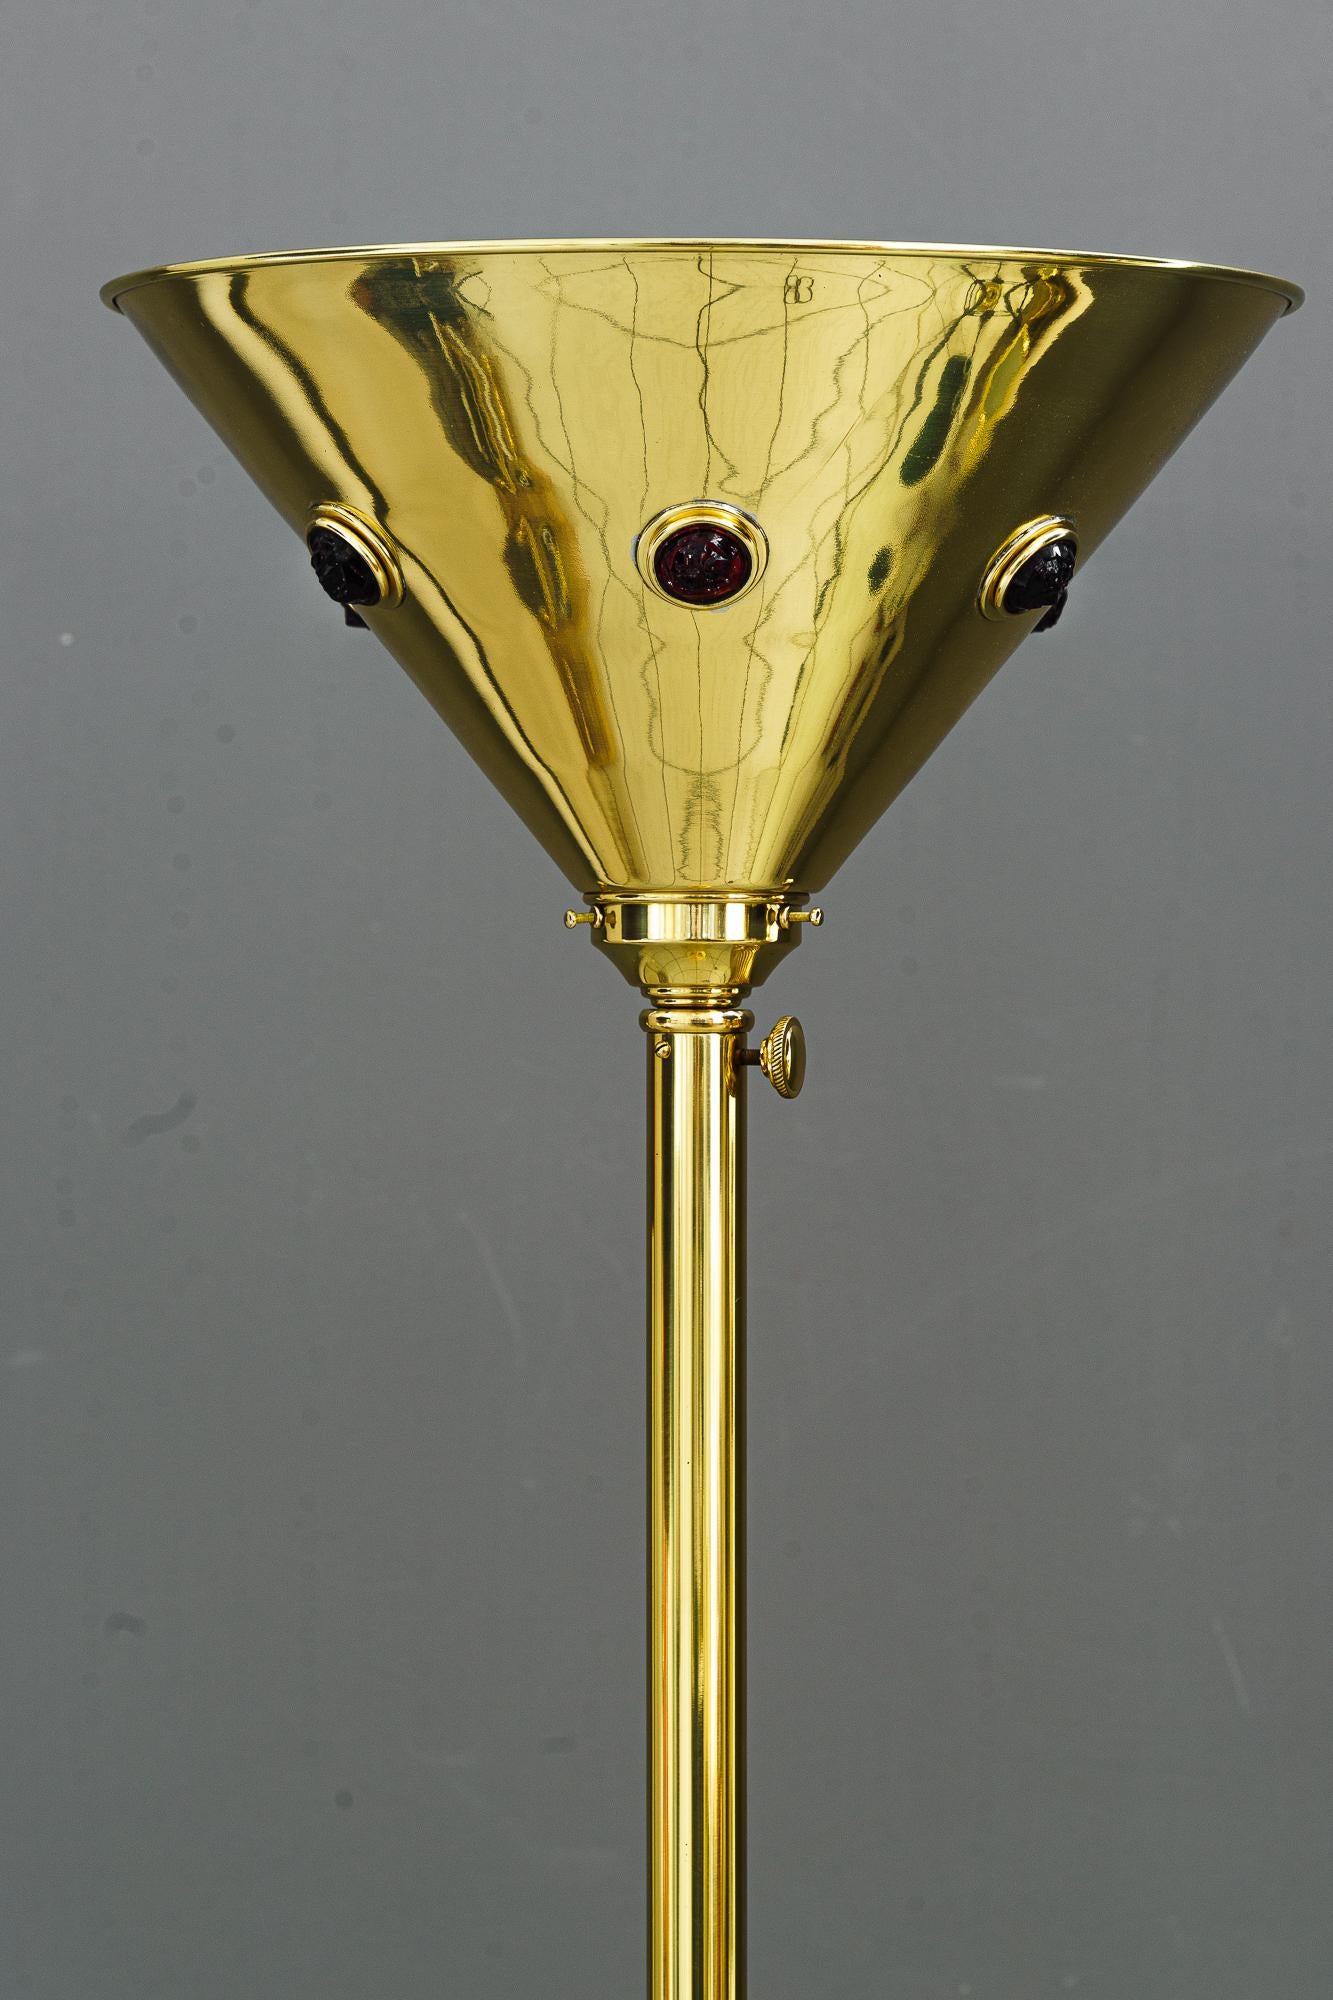 Art Deco Stehlampe wien um 1920s
Poliert und emailliert
Original rote Opalglassteine
Einstellbar von 150cm bis zu 185cm Höhe